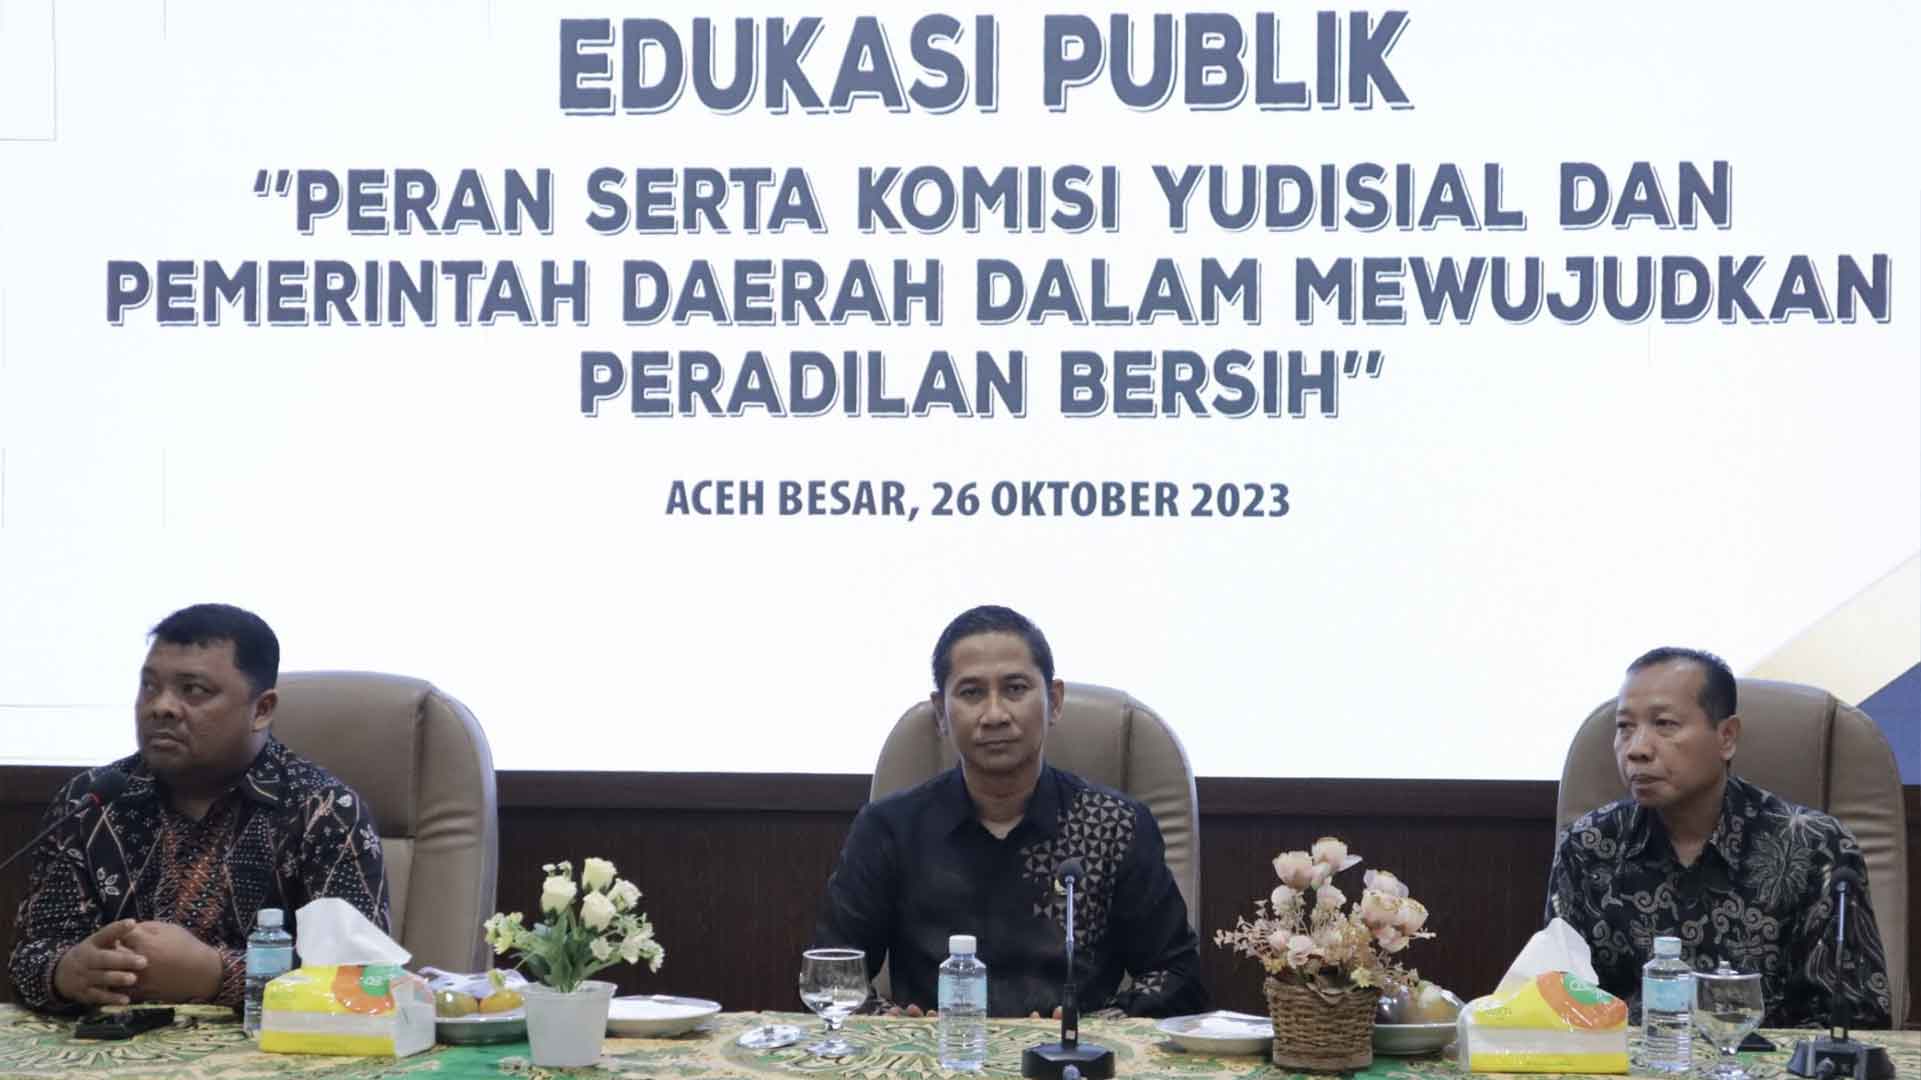 KY dan Pemkab Aceh Besar Gelar Edukasi Publik Wujudkan Peradilan Bersih